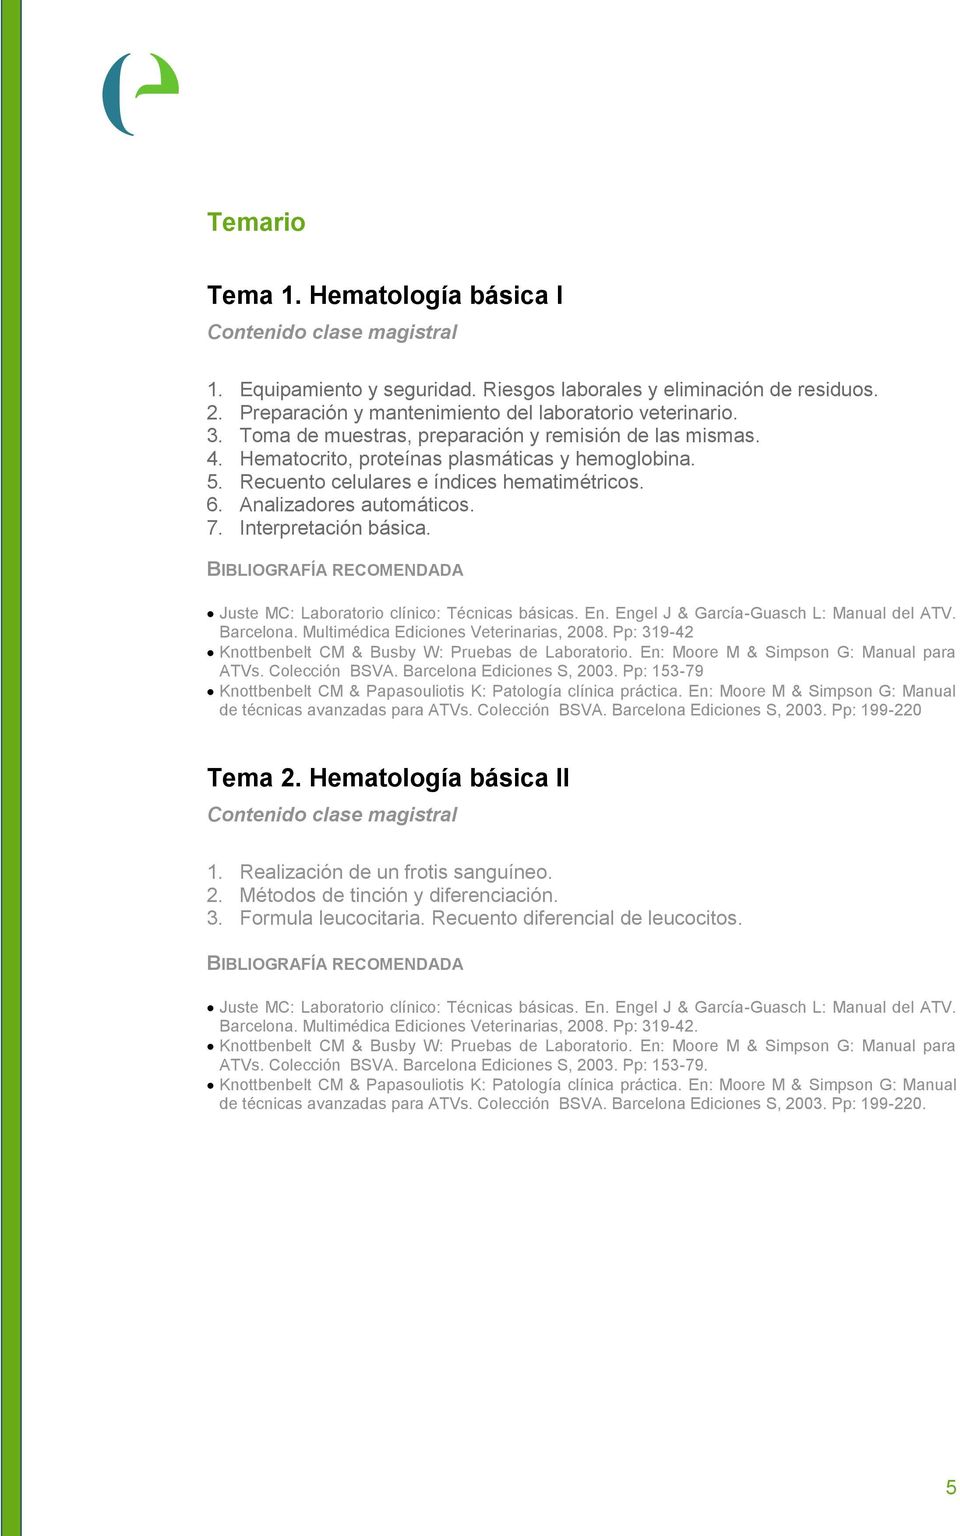 Interpretación básica. Juste MC: Laboratorio clínico: Técnicas básicas. En. Engel J & García-Guasch L: Manual del ATV. Barcelona. Multimédica Ediciones Veterinarias, 2008.